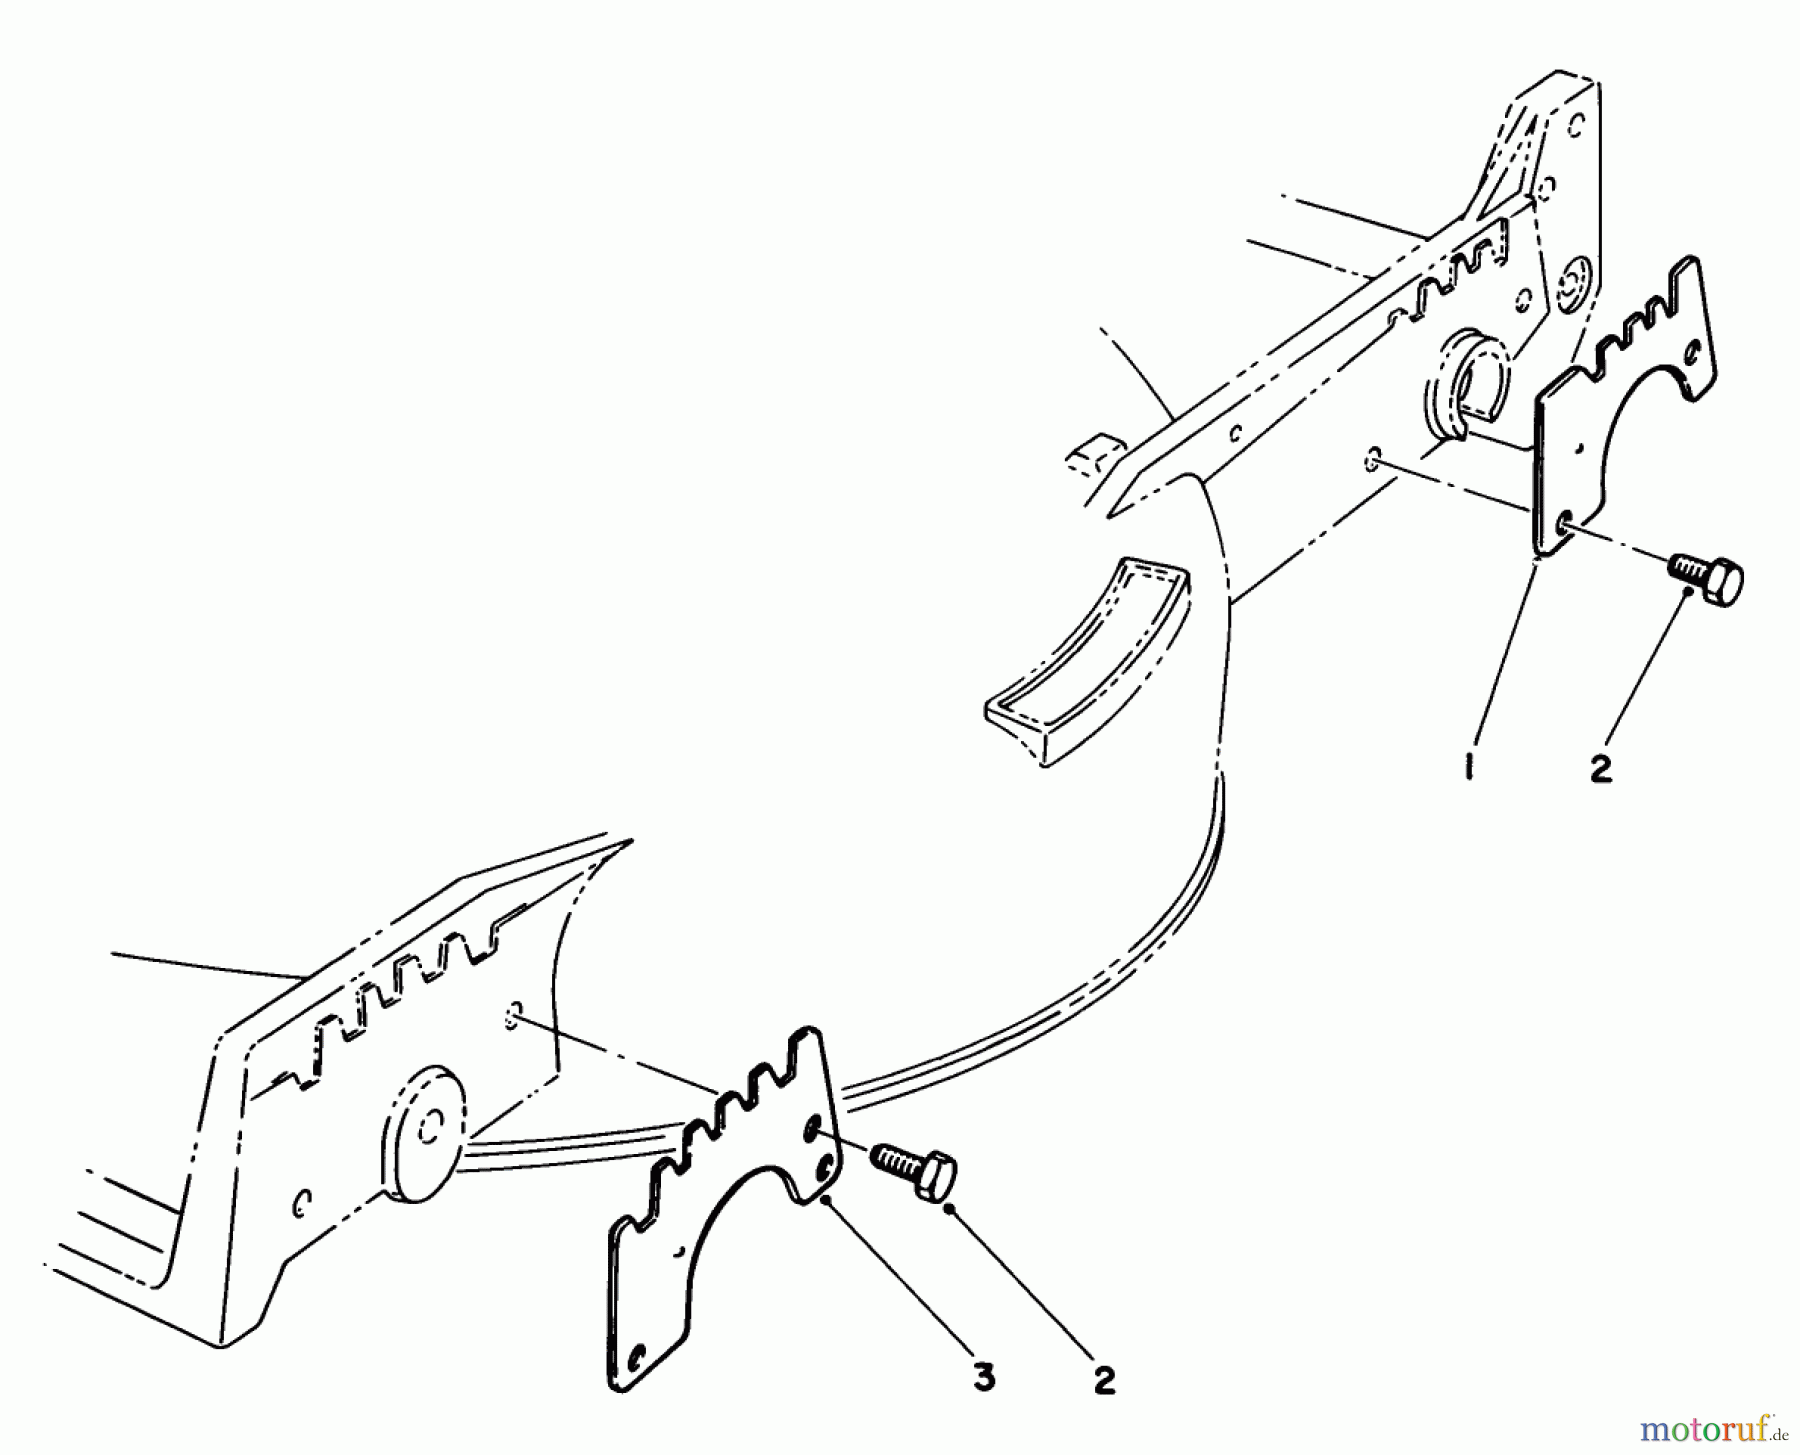  Toro Neu Mowers, Walk-Behind Seite 1 20680 - Toro Lawnmower, 1986 (6000001-6999999) WEAR PLATE KIT NO. 49-4080 (OPTIONAL)